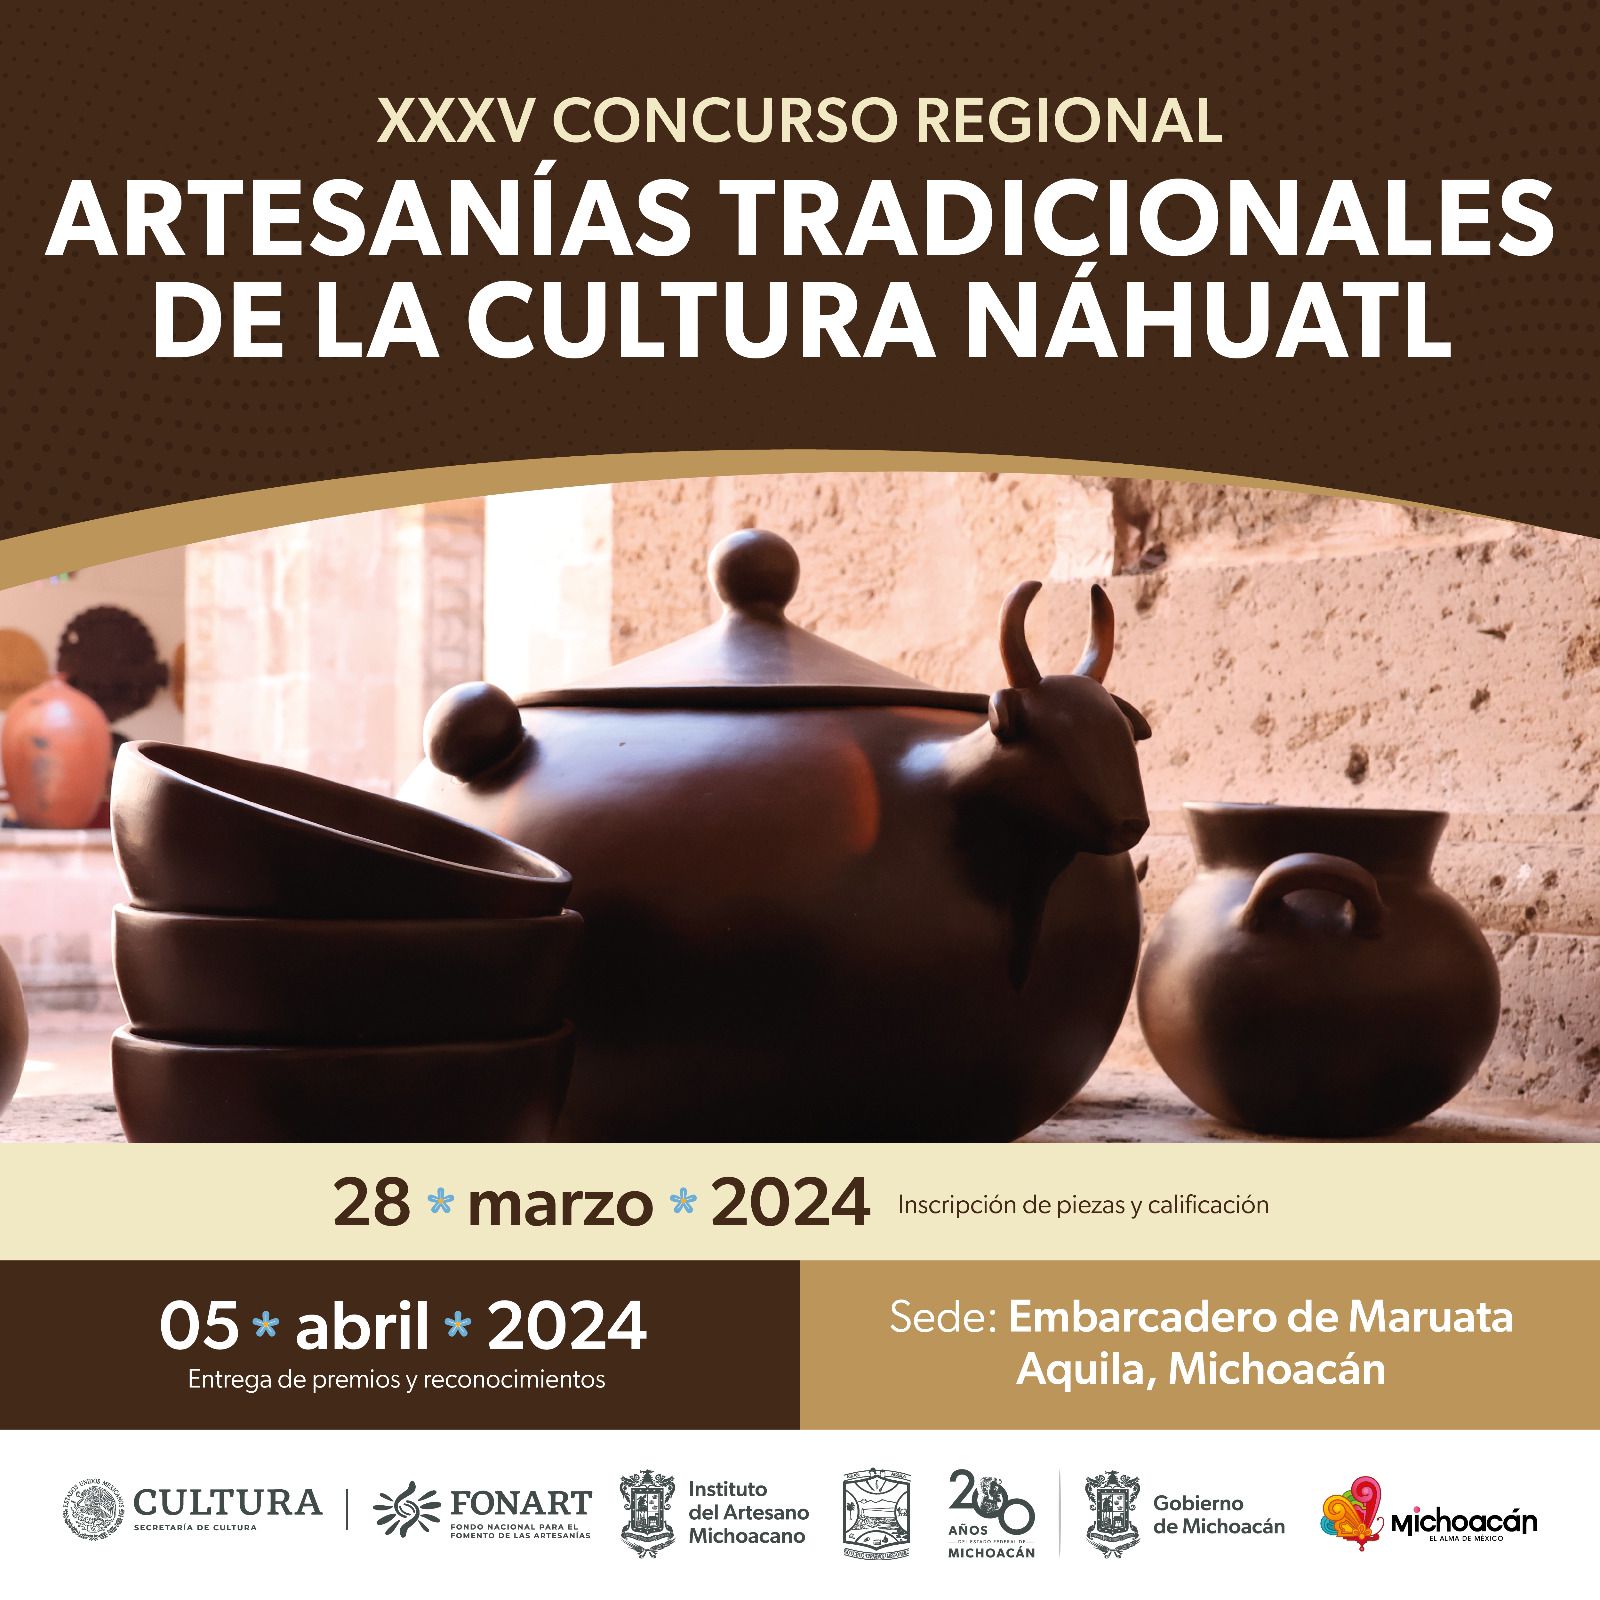 Vamos a Maruata al Concurso Regional de Artesanías de la Cultura Náhuatl